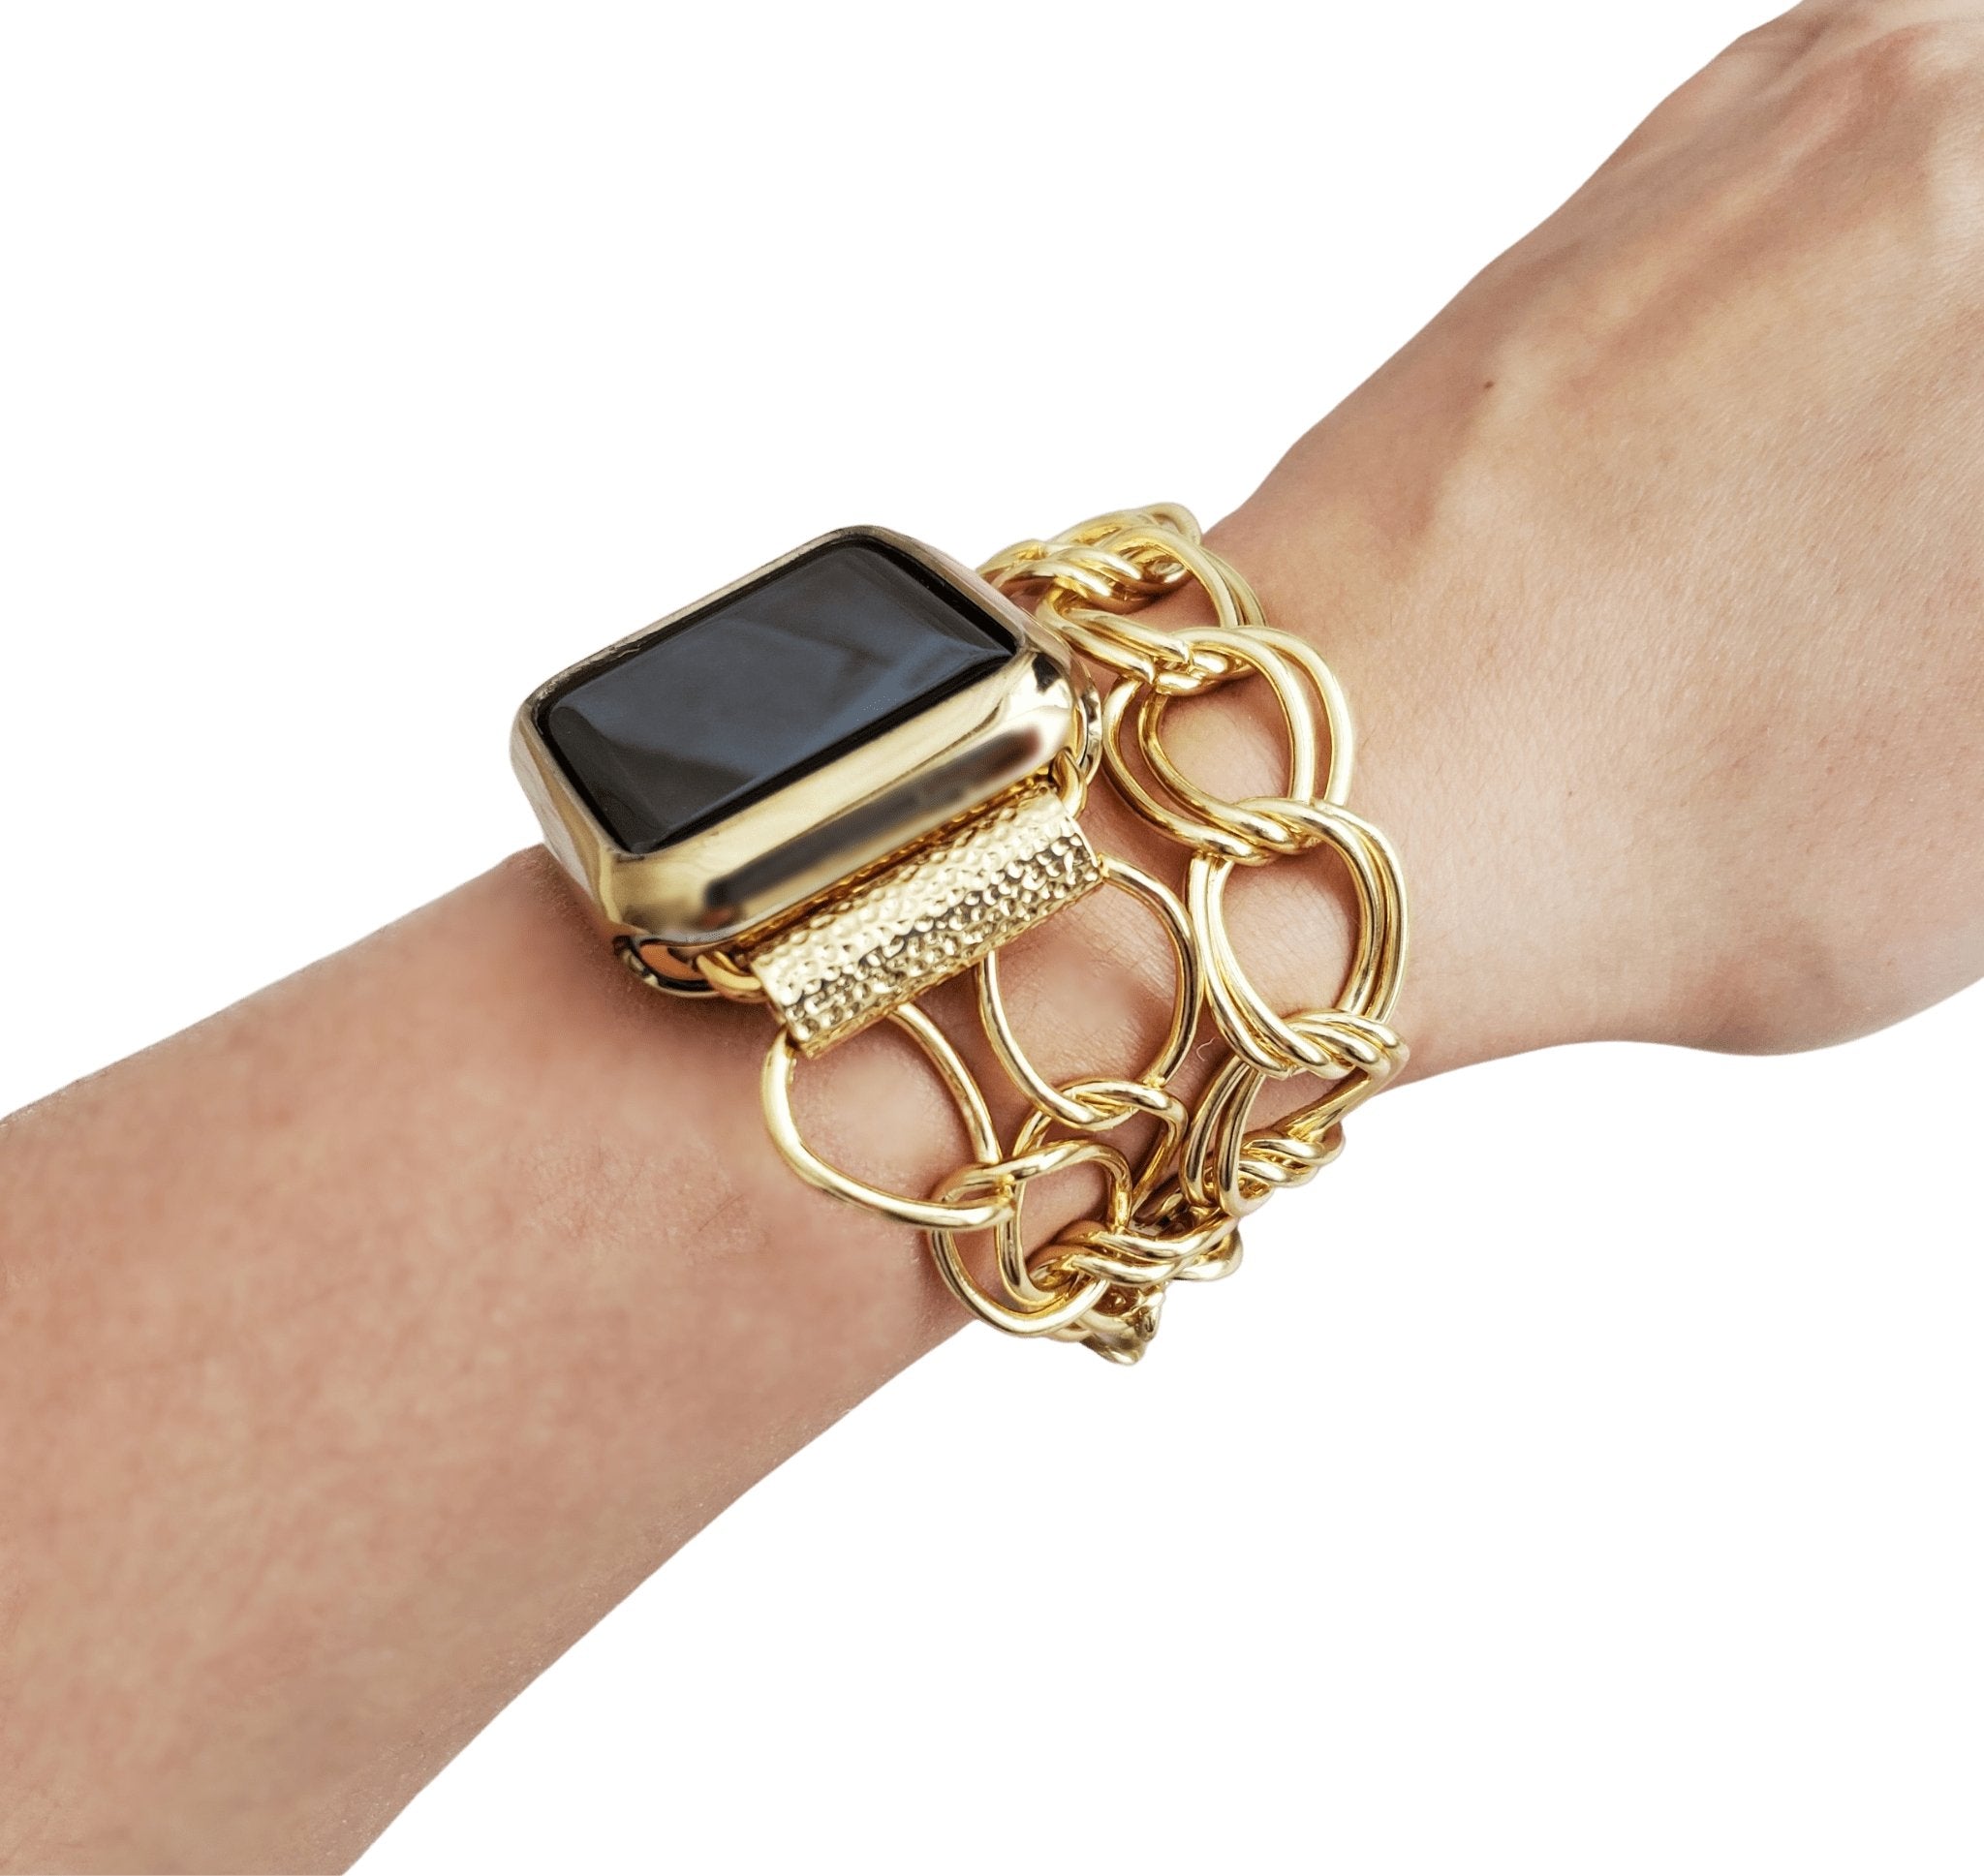 Chunky Chain Bracelet Watch